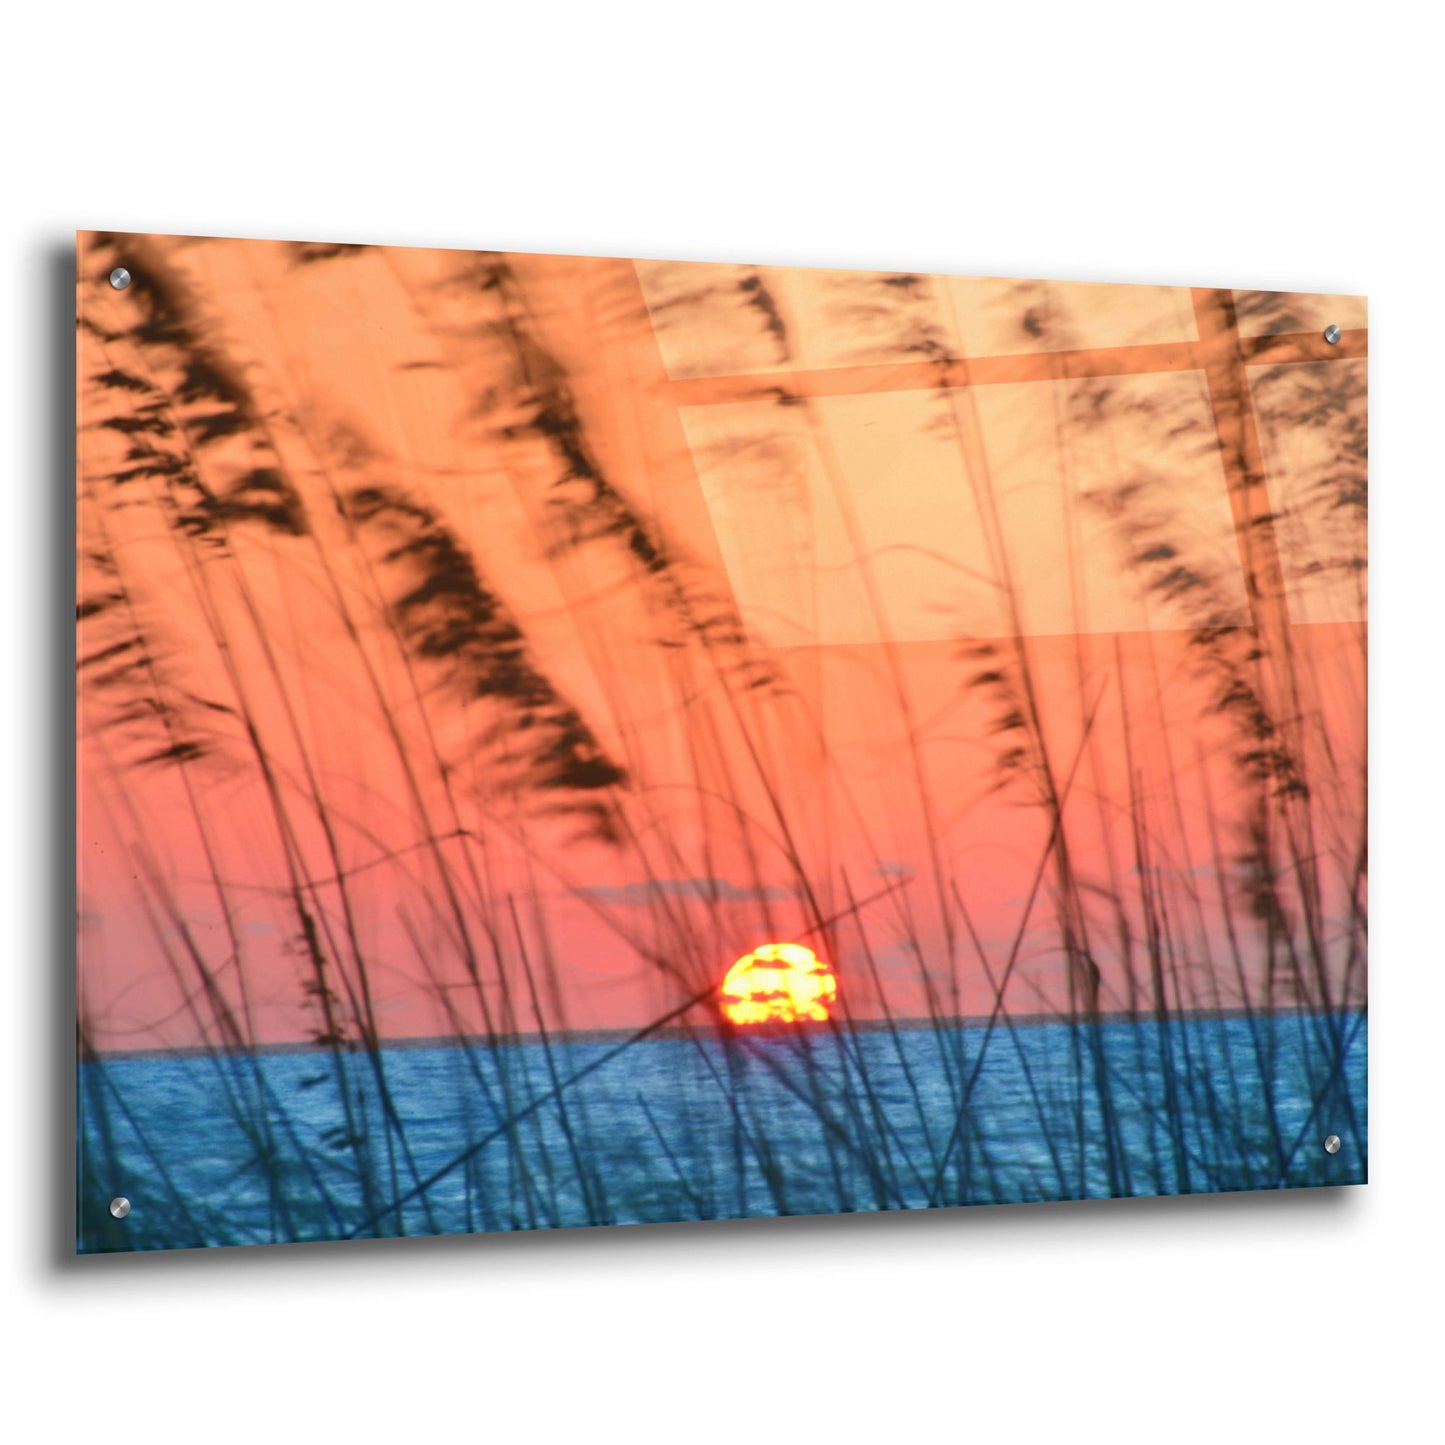 Epic Art 'Sun Dance' by Steve Vaughn, Acrylic Glass Wall Art,36x24